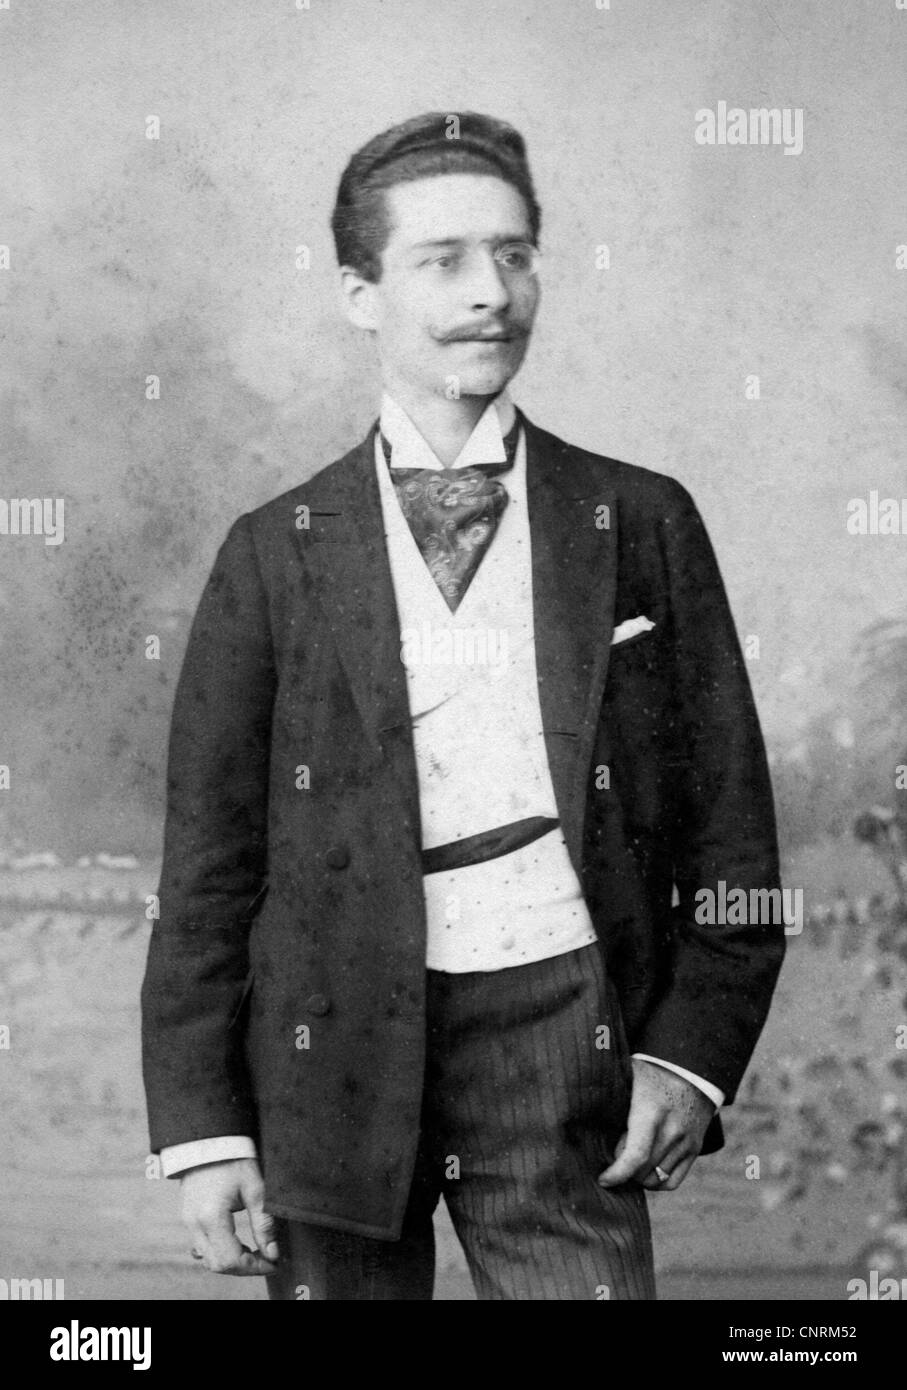 Mode der 1900er jahre männer Schwarzweiß-Stockfotos und -bilder - Alamy